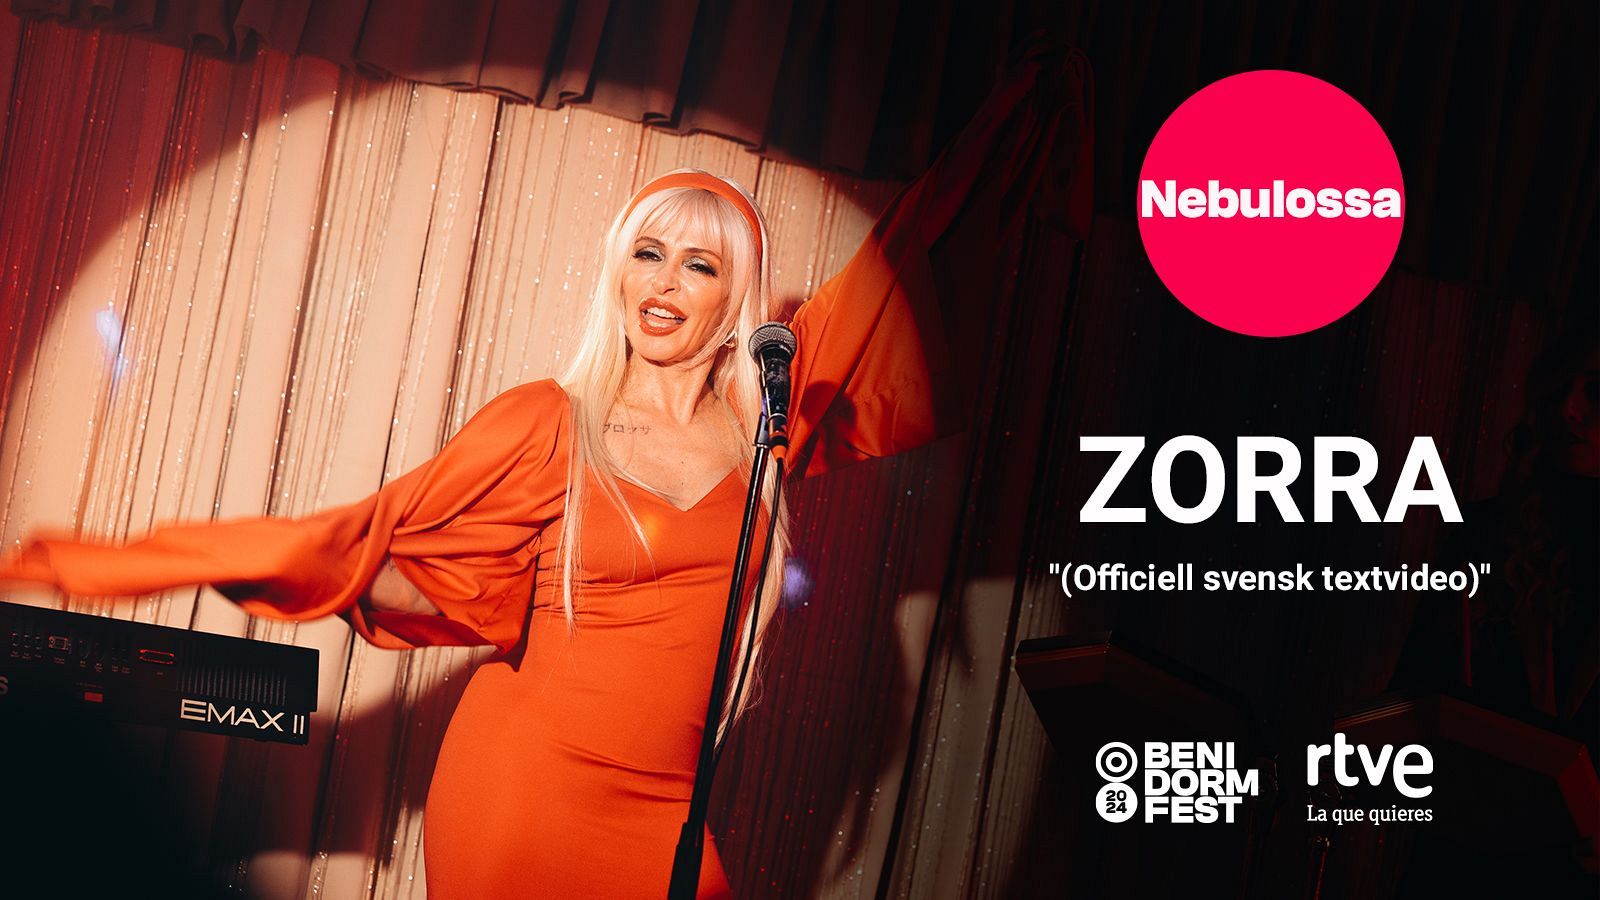 Eurovisión 2024 | "Zorra" de Nebulossa, videoclip oficial (Traducción al sueco)